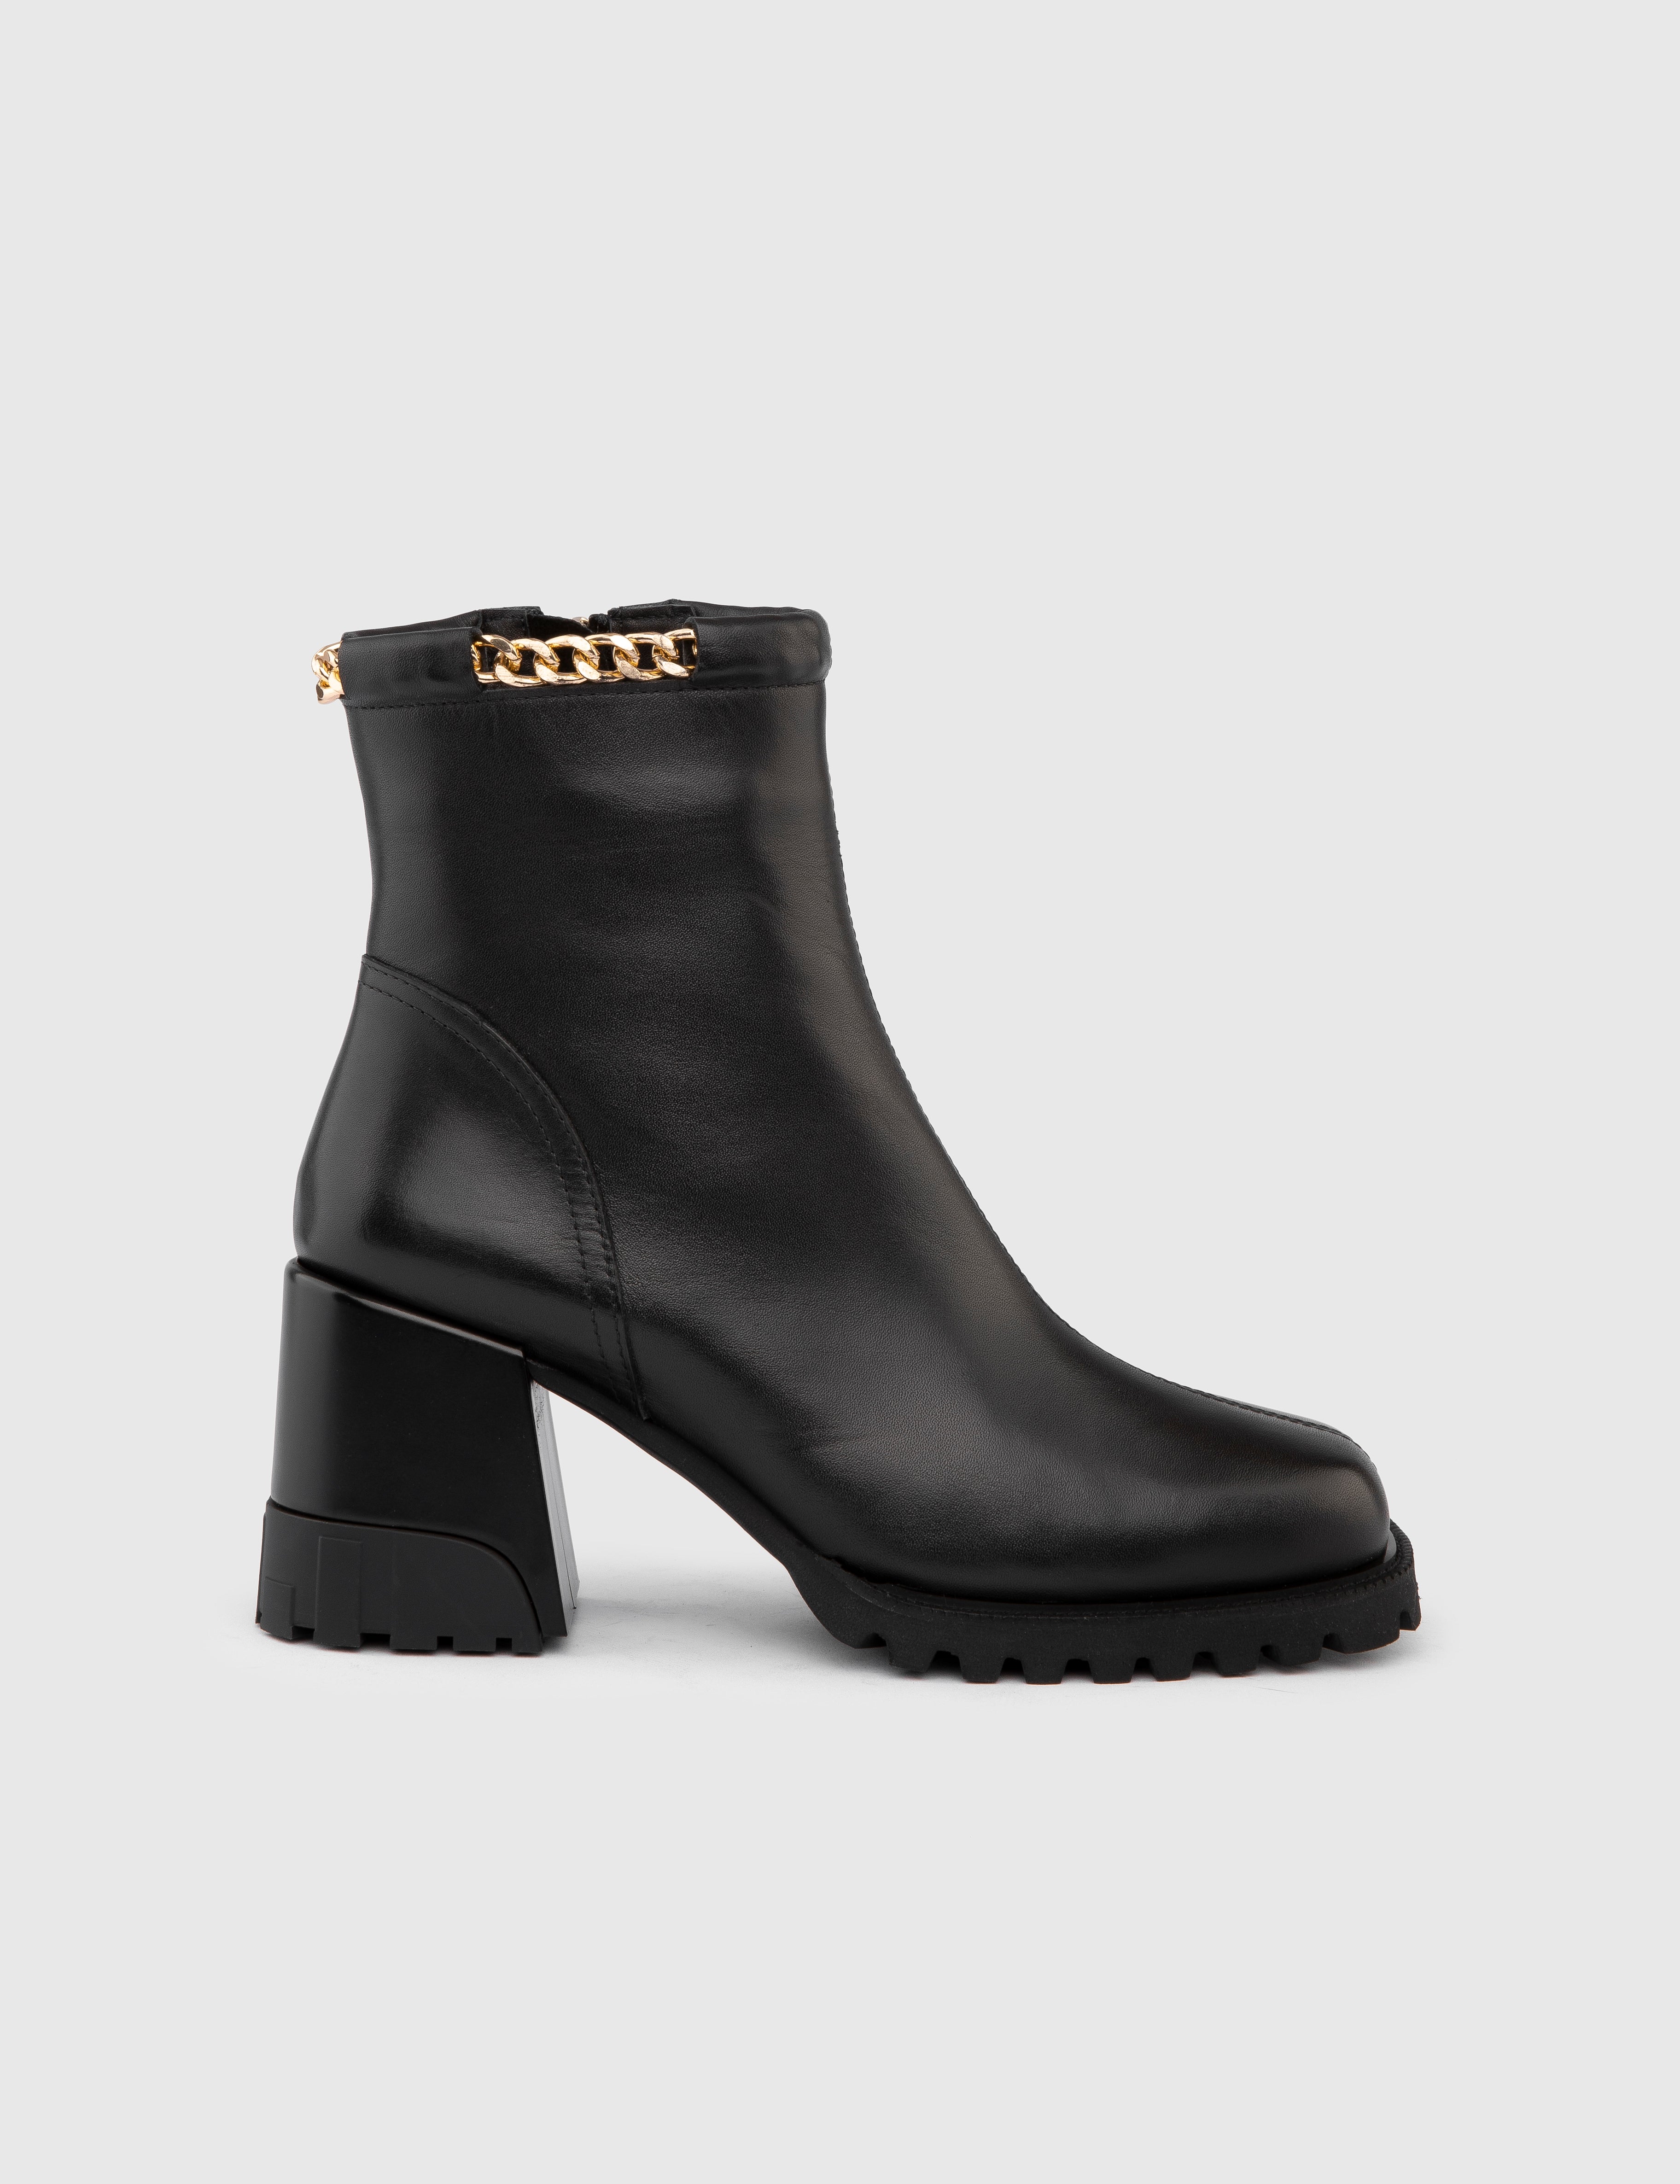 Damen-Stiefel „Harder“ aus schwarzem Leder mit Absatz